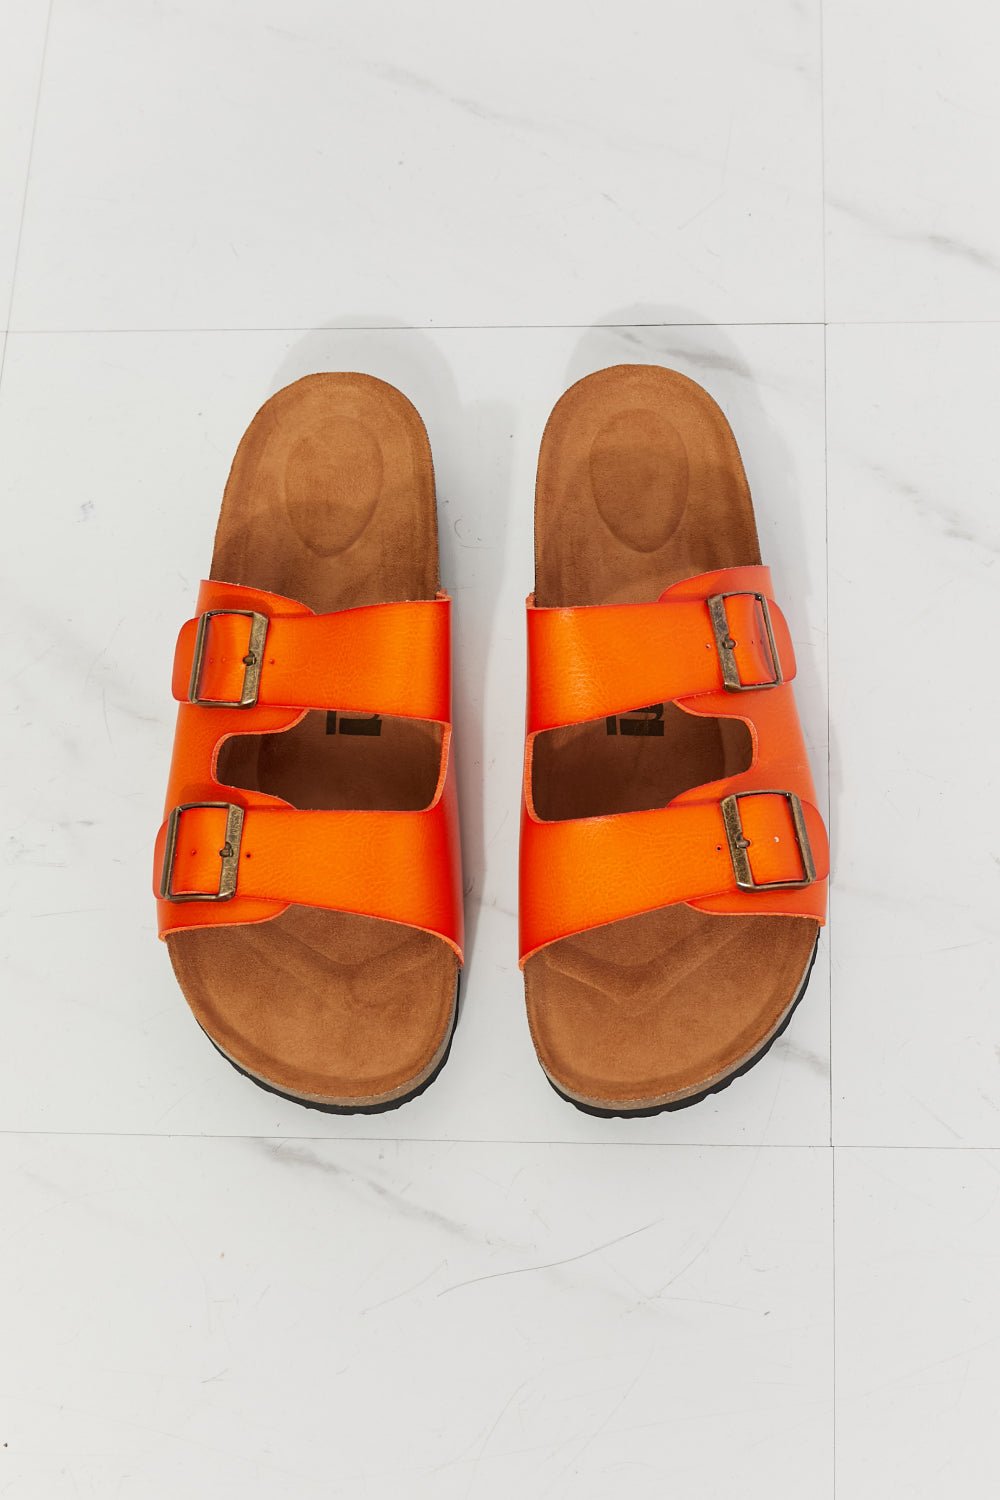 MMShoes Feeling Alive Double Banded Slide Sandals in Orange - Guy Christopher